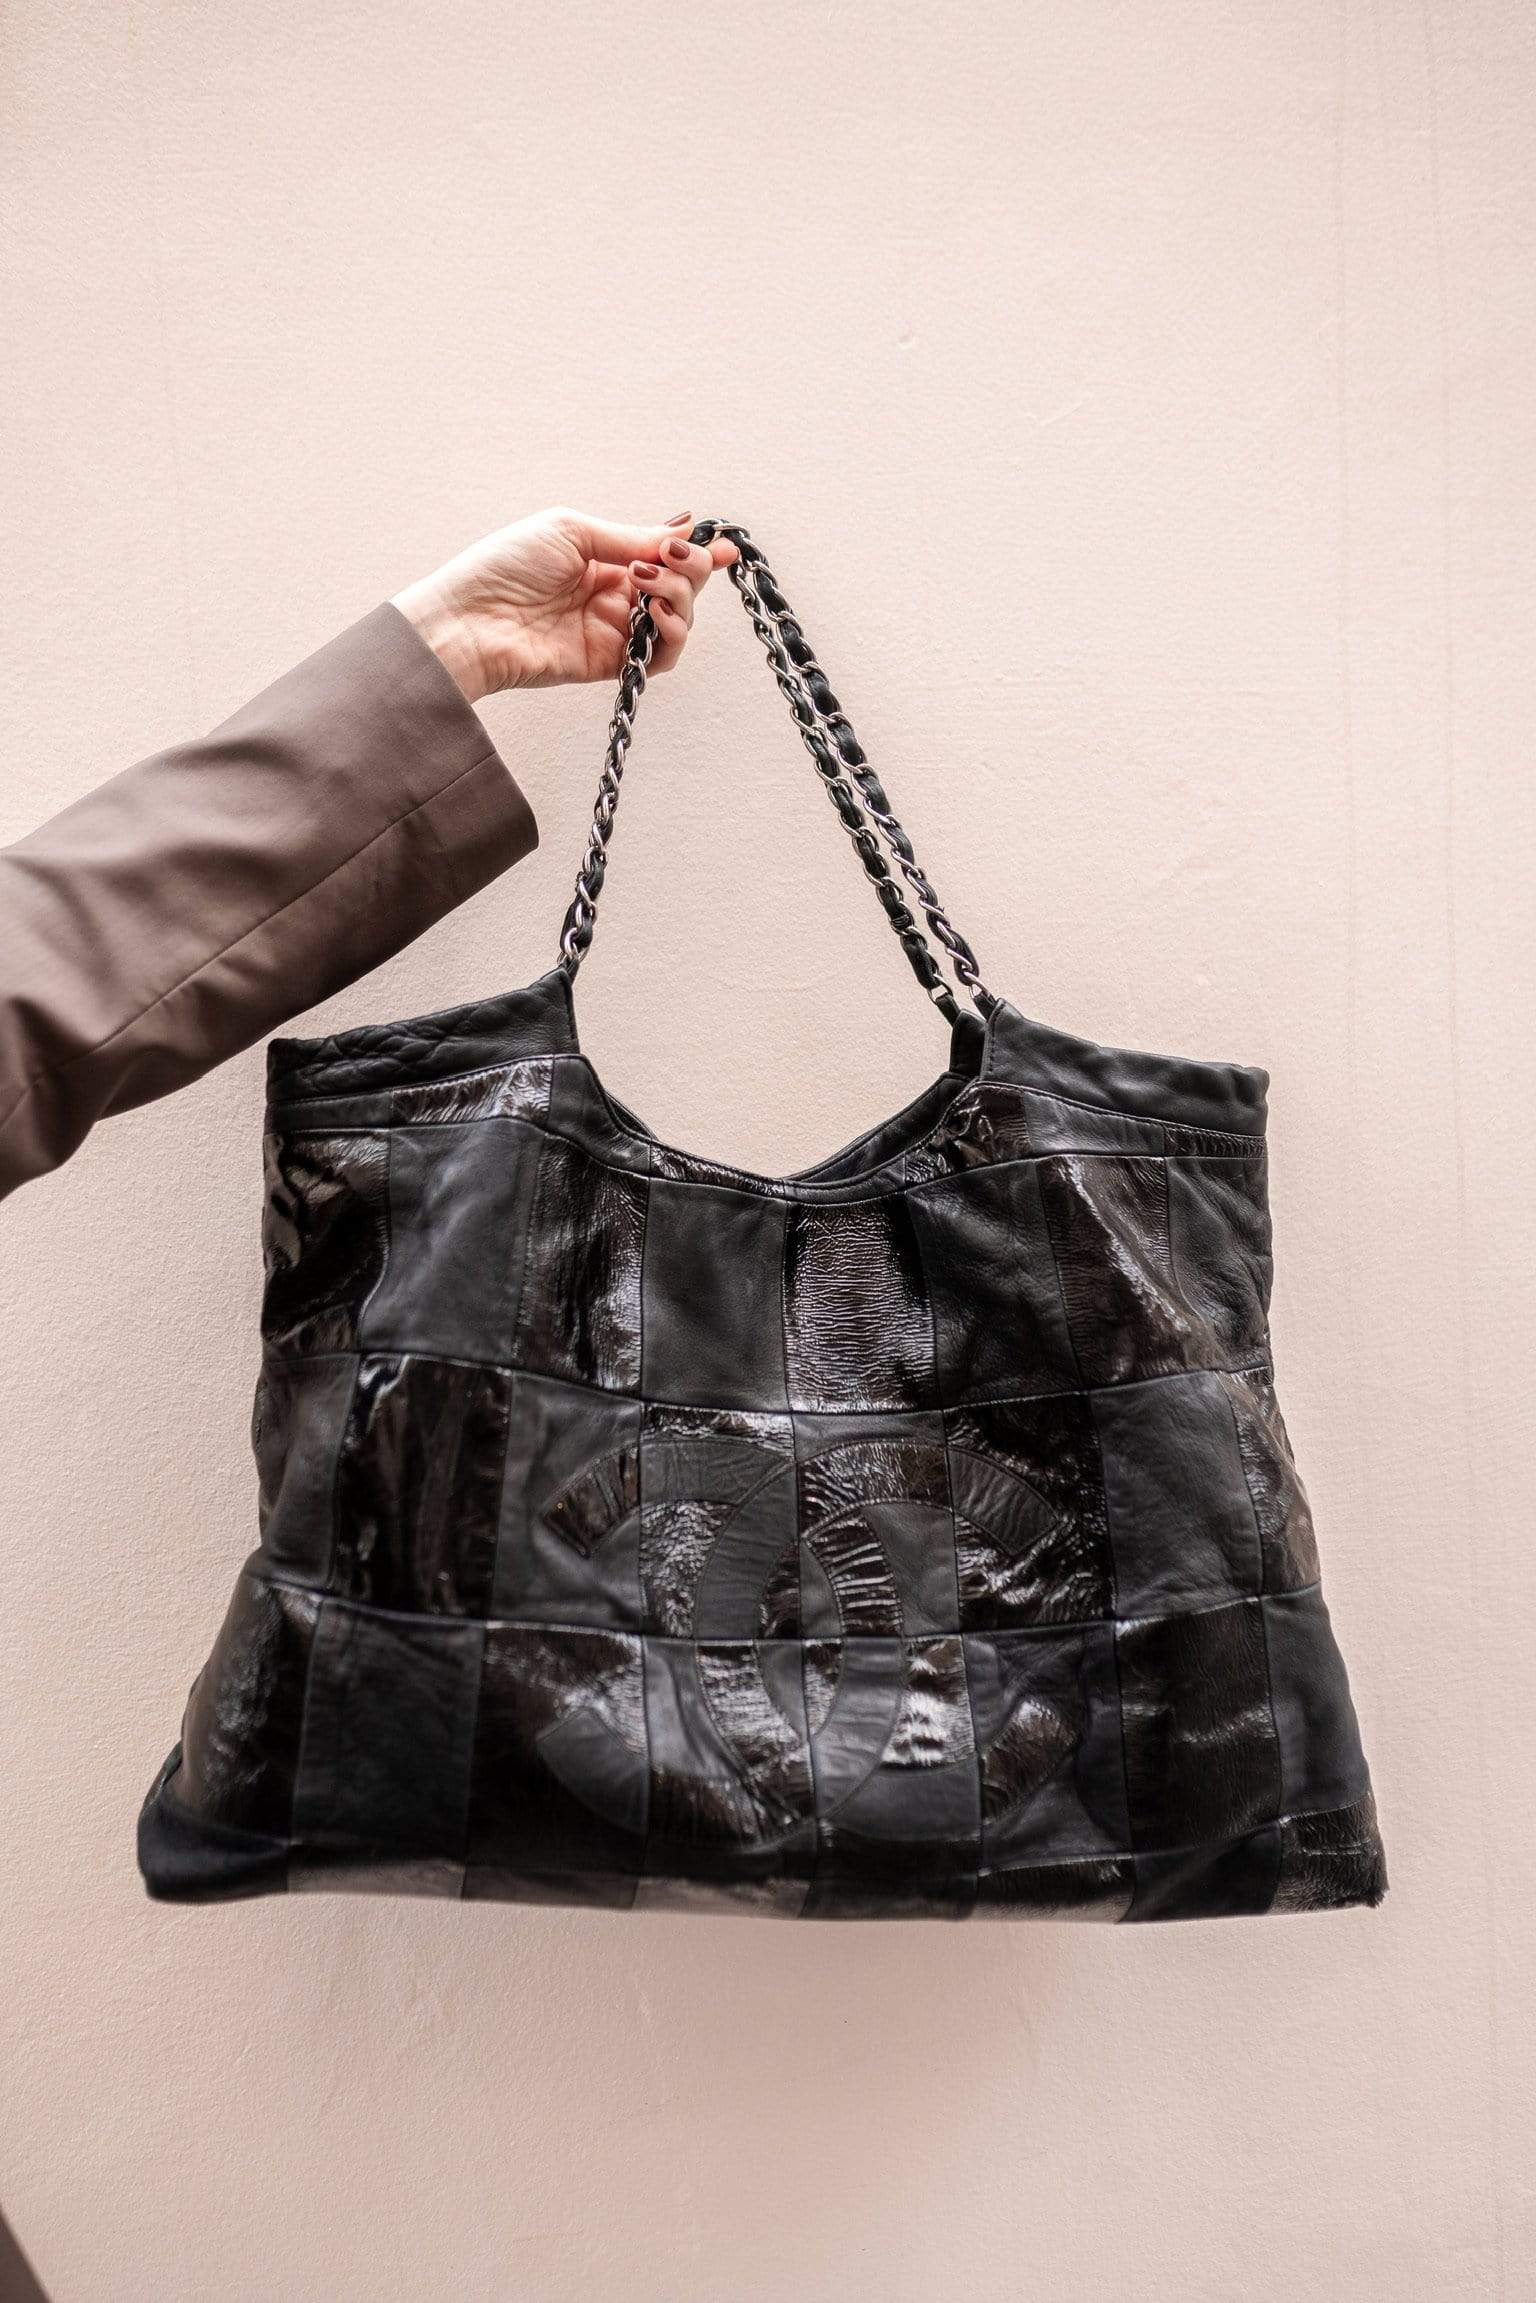 Chanel Chanel Brooklyn Tote Bag - ADL1545